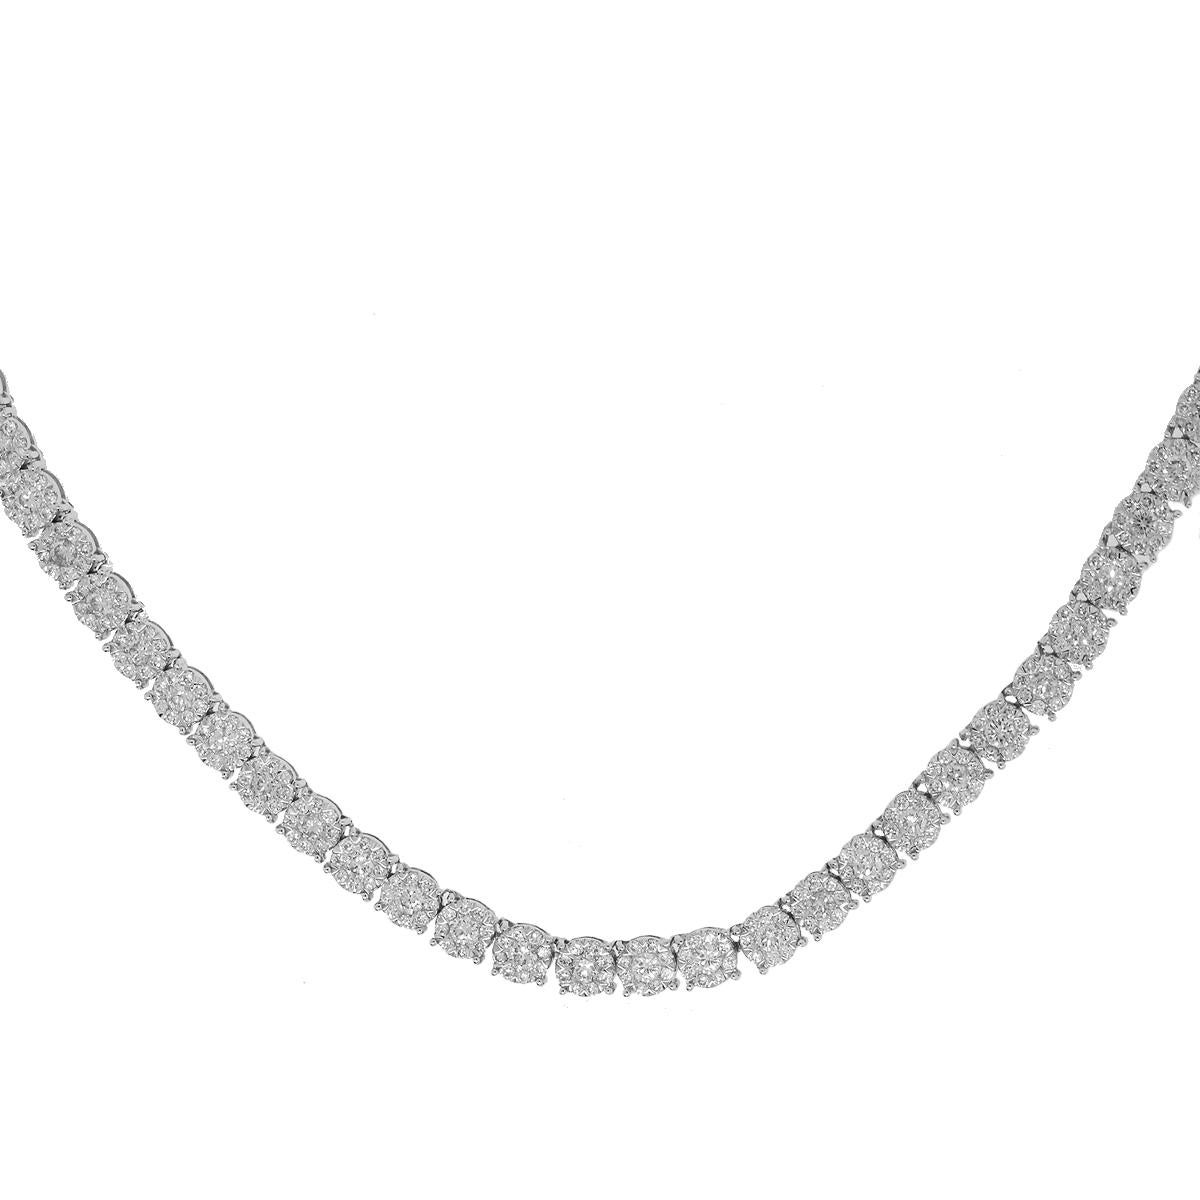 Round Cut 13.75 Carat Diamond Necklace